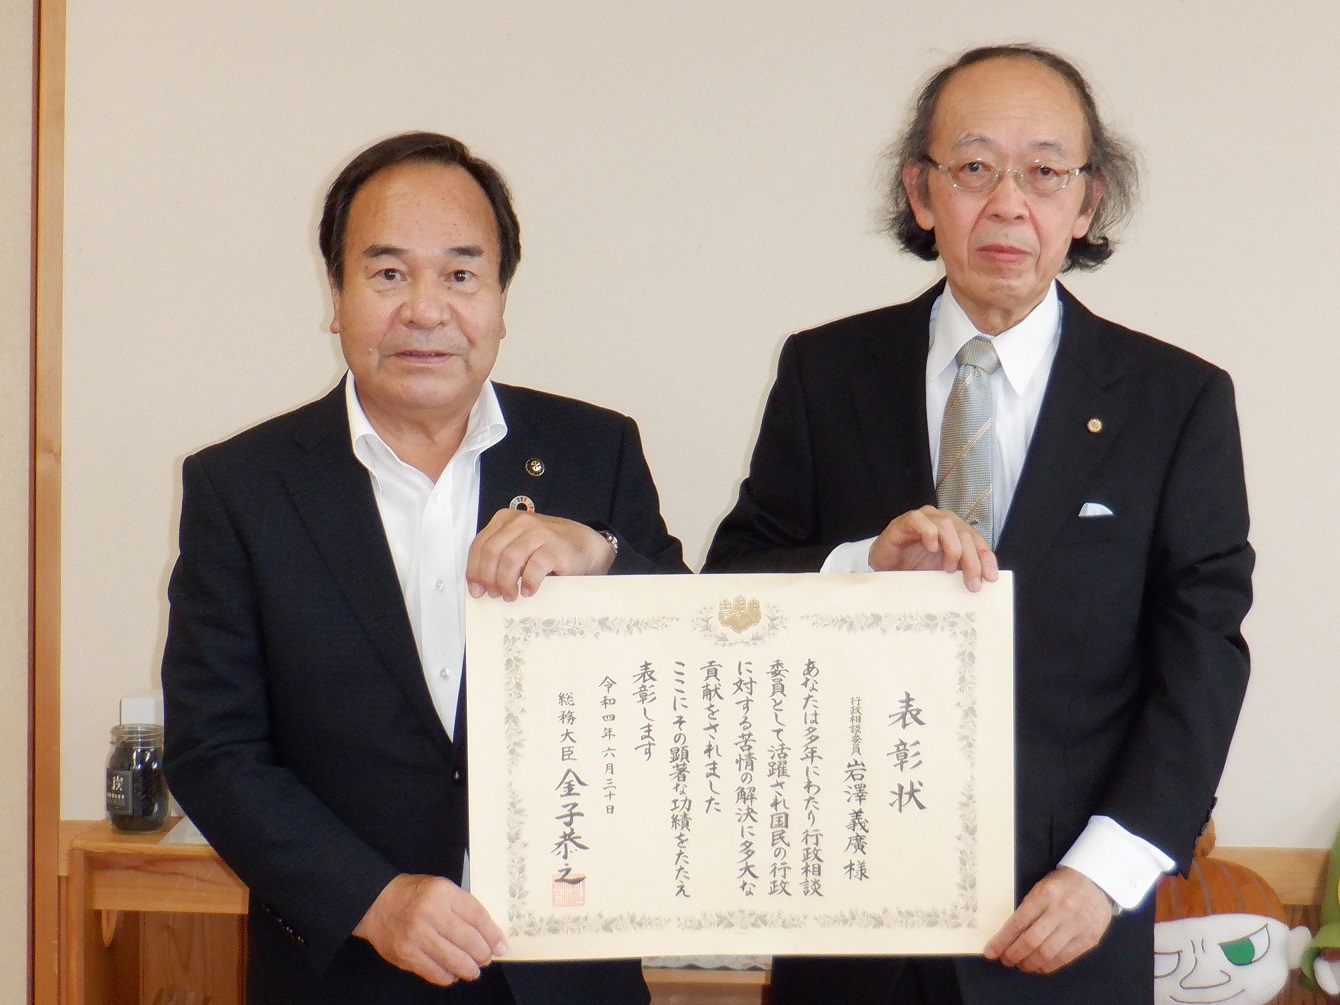 総務大臣表彰を受賞された岩澤義廣様と市長が表彰状に手を添えた写真